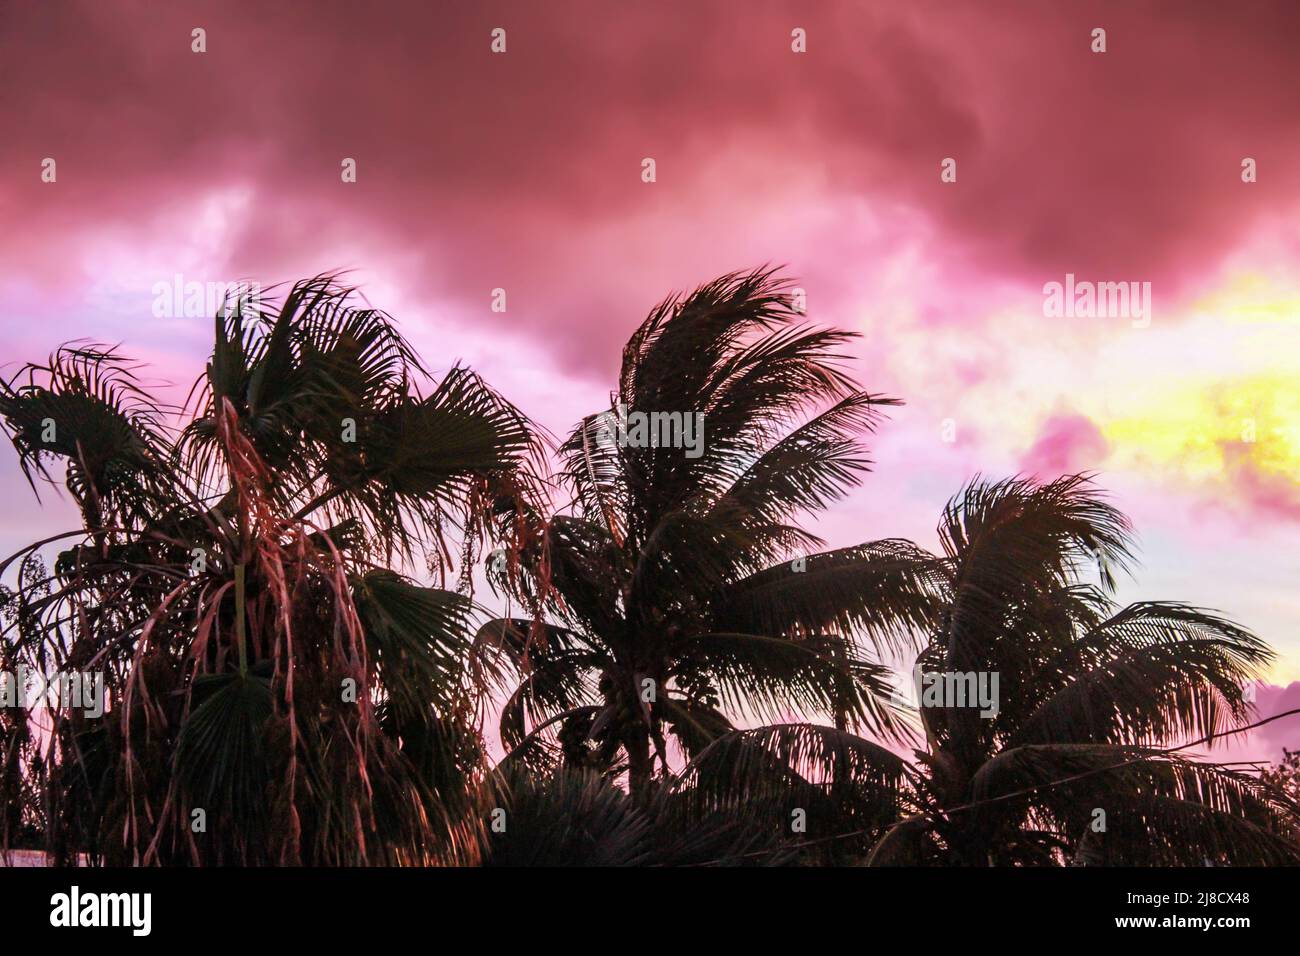 Le bord de la tempête - palmiers silhouetés contre un ciel étrange rose, turquoise et jaune pendant qu'une tempête tropicale passe à proximité Banque D'Images